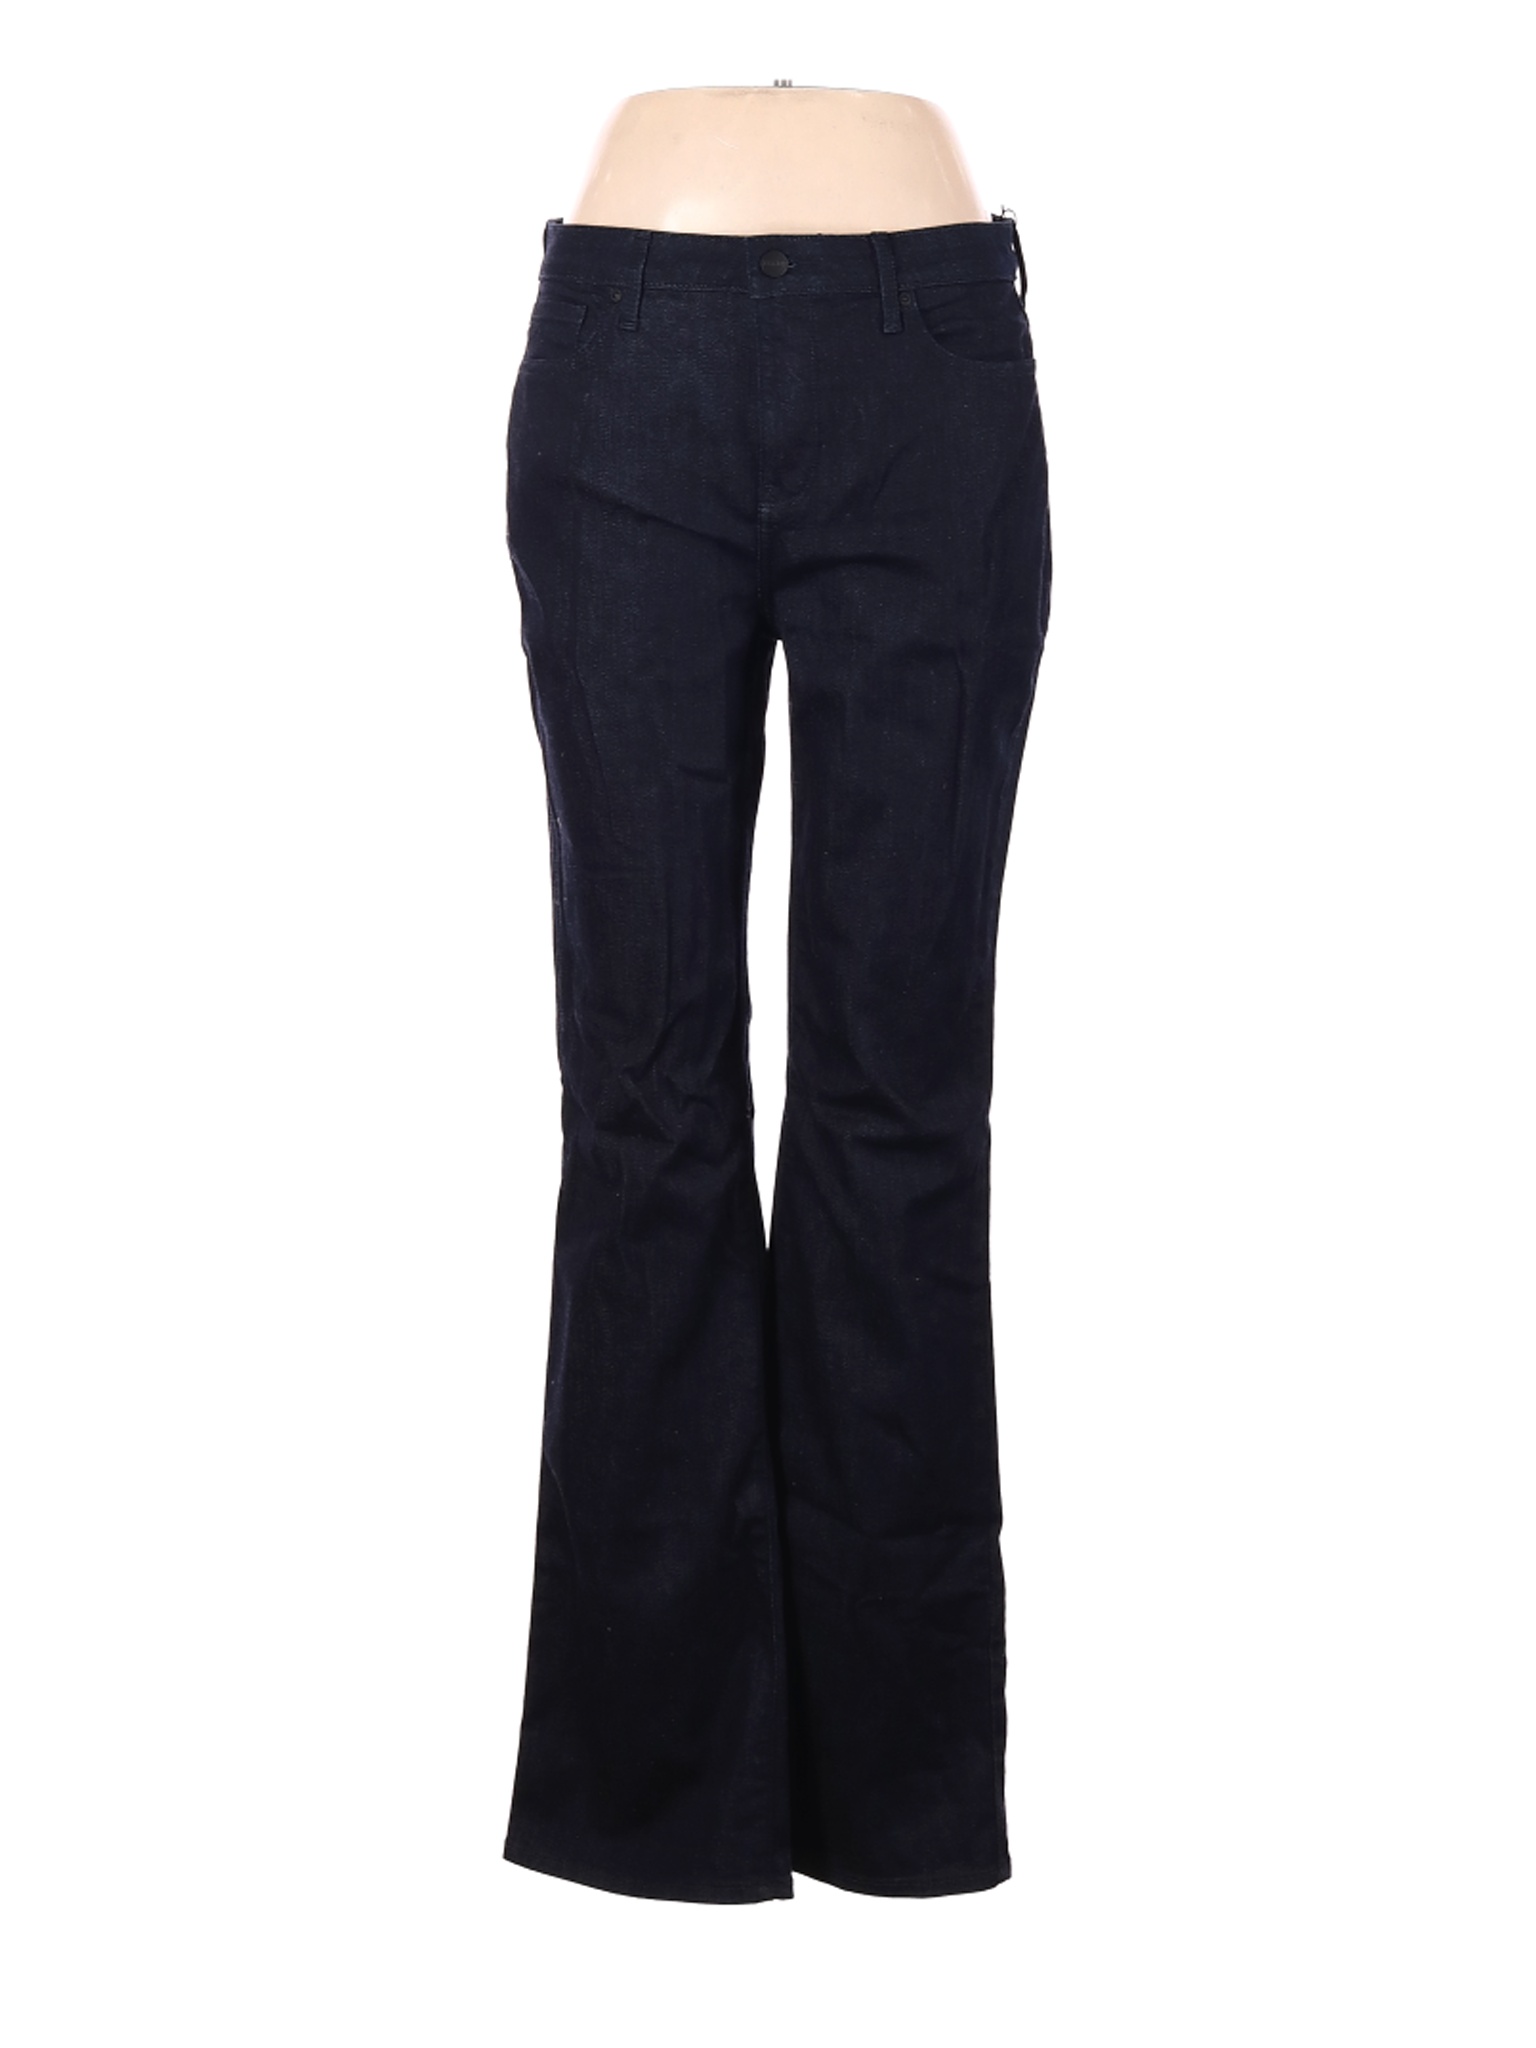 NYDJ Women Black Jeans 10 | eBay